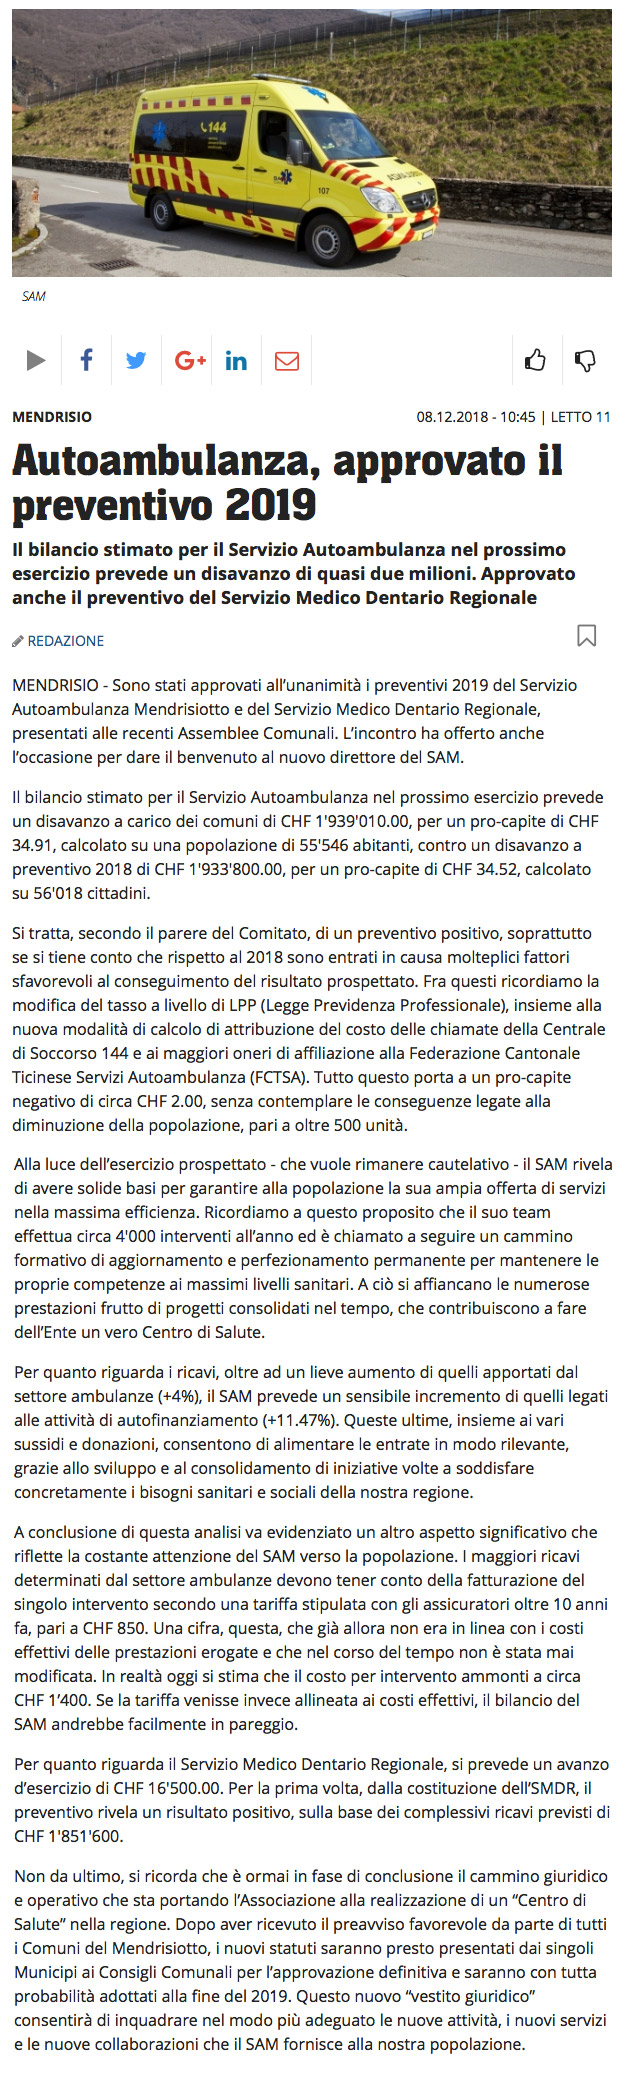 Corriere del Ticino.08.12.2018